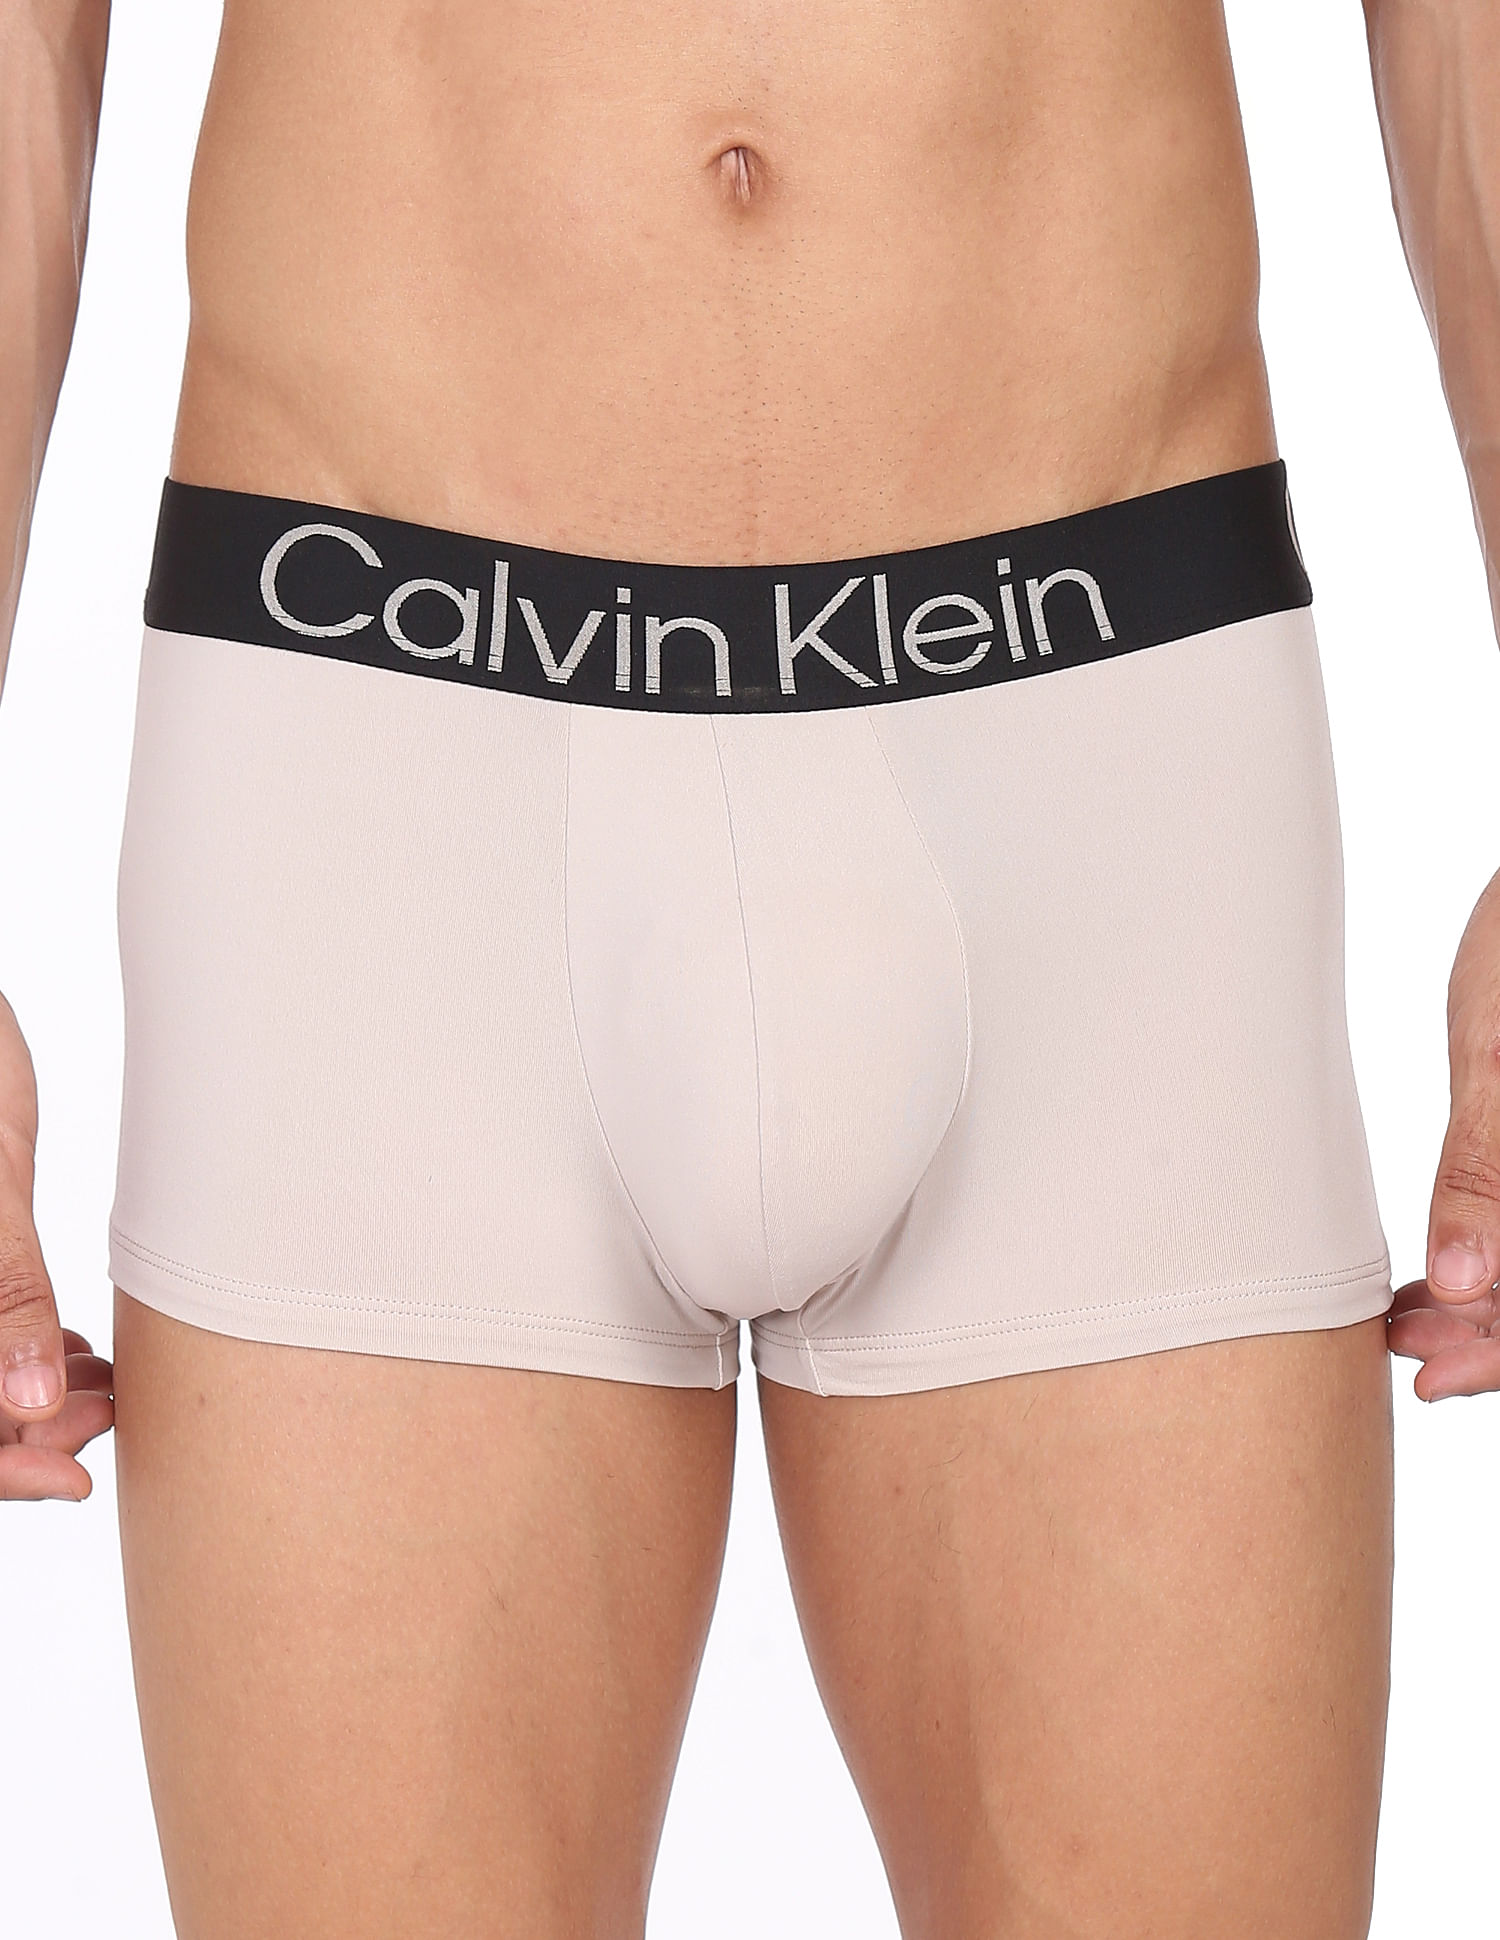 Buy Calvin Klein Underwear Men Beige Low Rise Solid Trunks - NNNOW.com